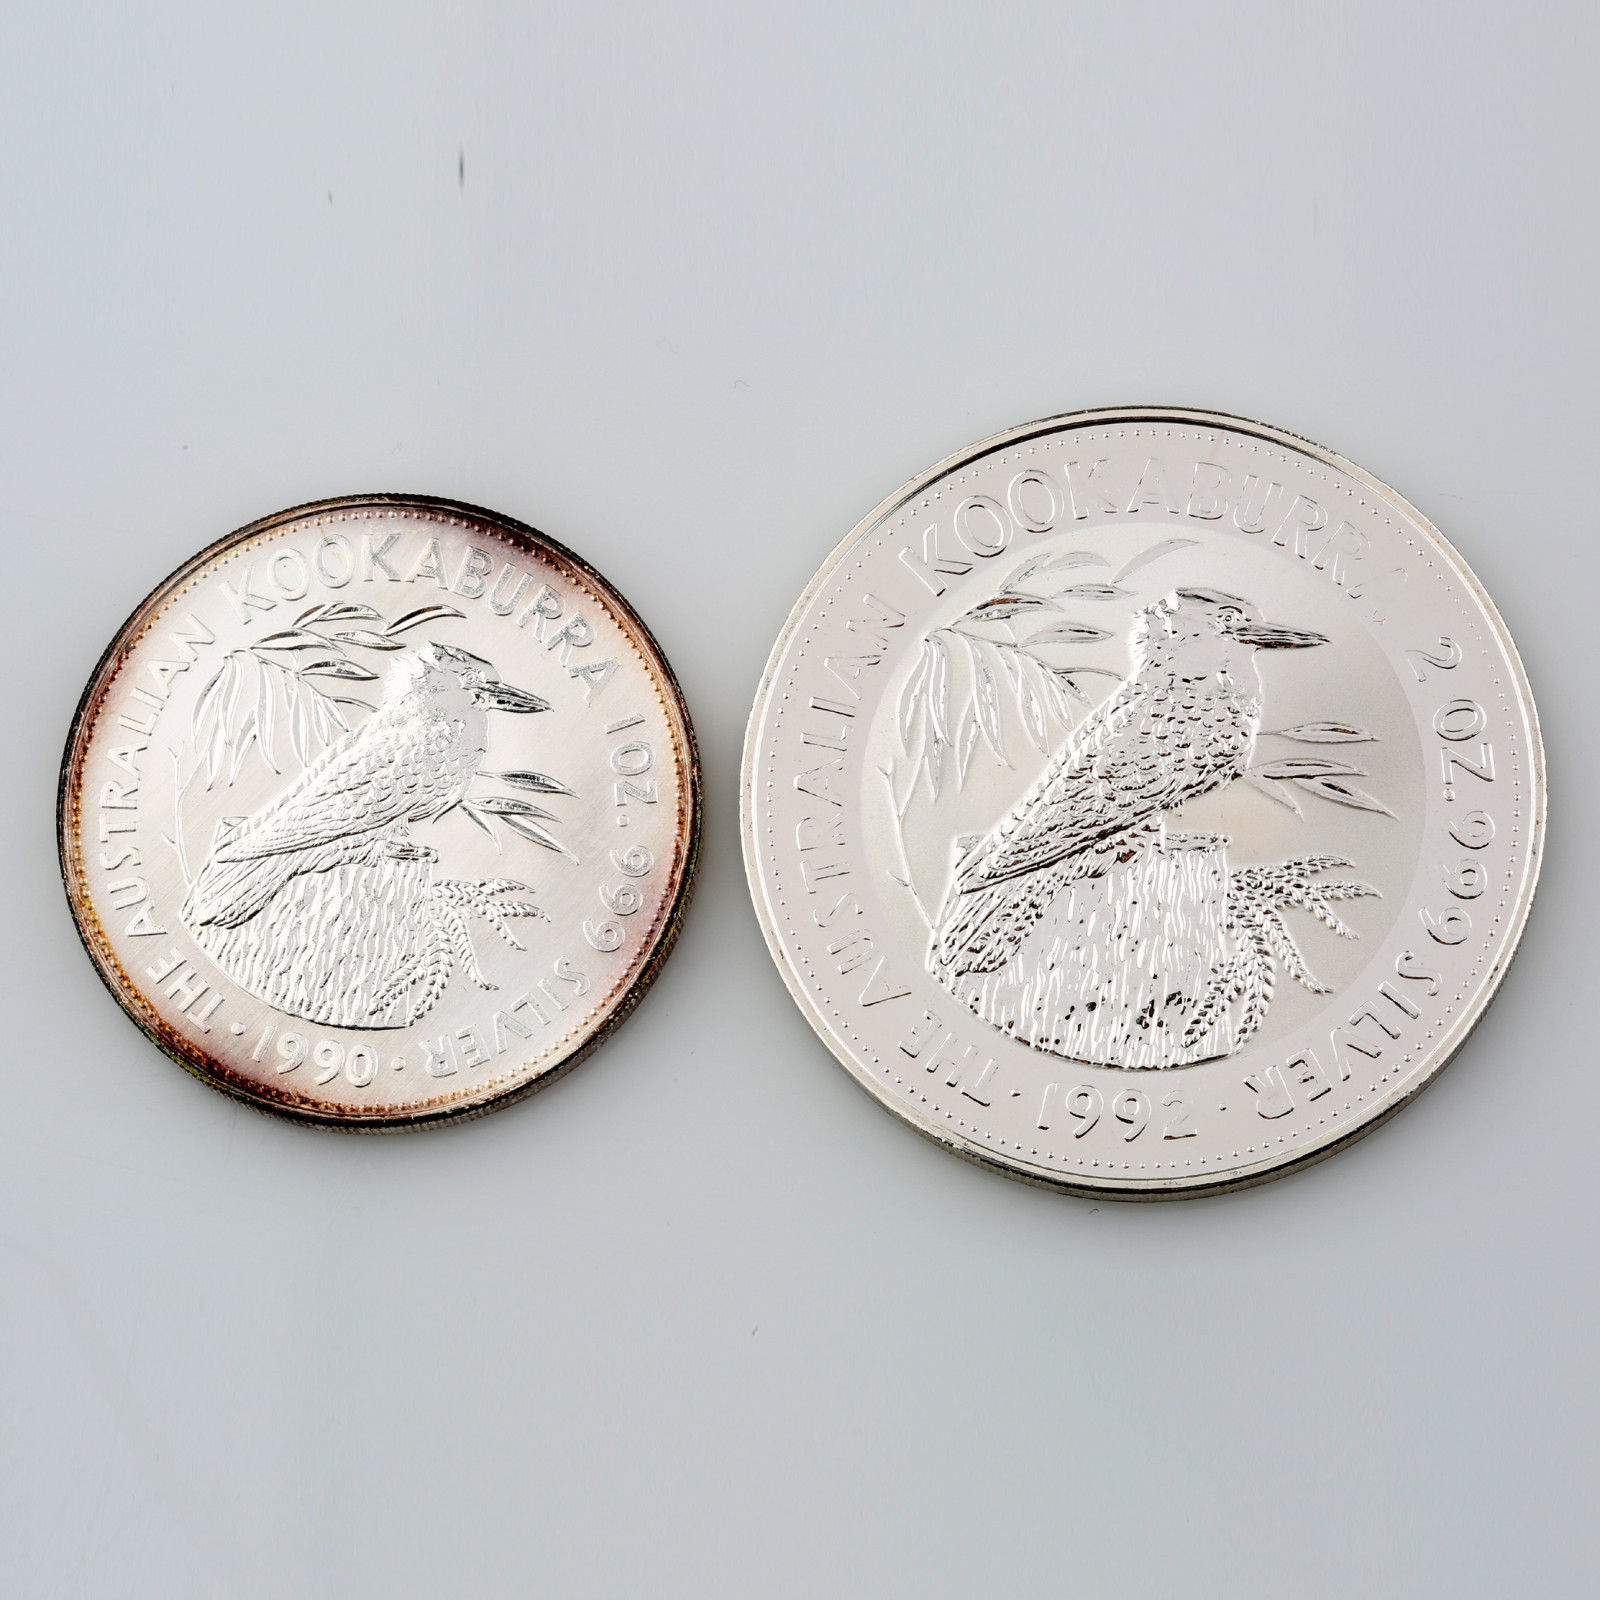 1990 .999 Silver 1 oz. Australlian Kookaburra $5 1992 .999 Silver 2 oz. $2 coin - $233.89